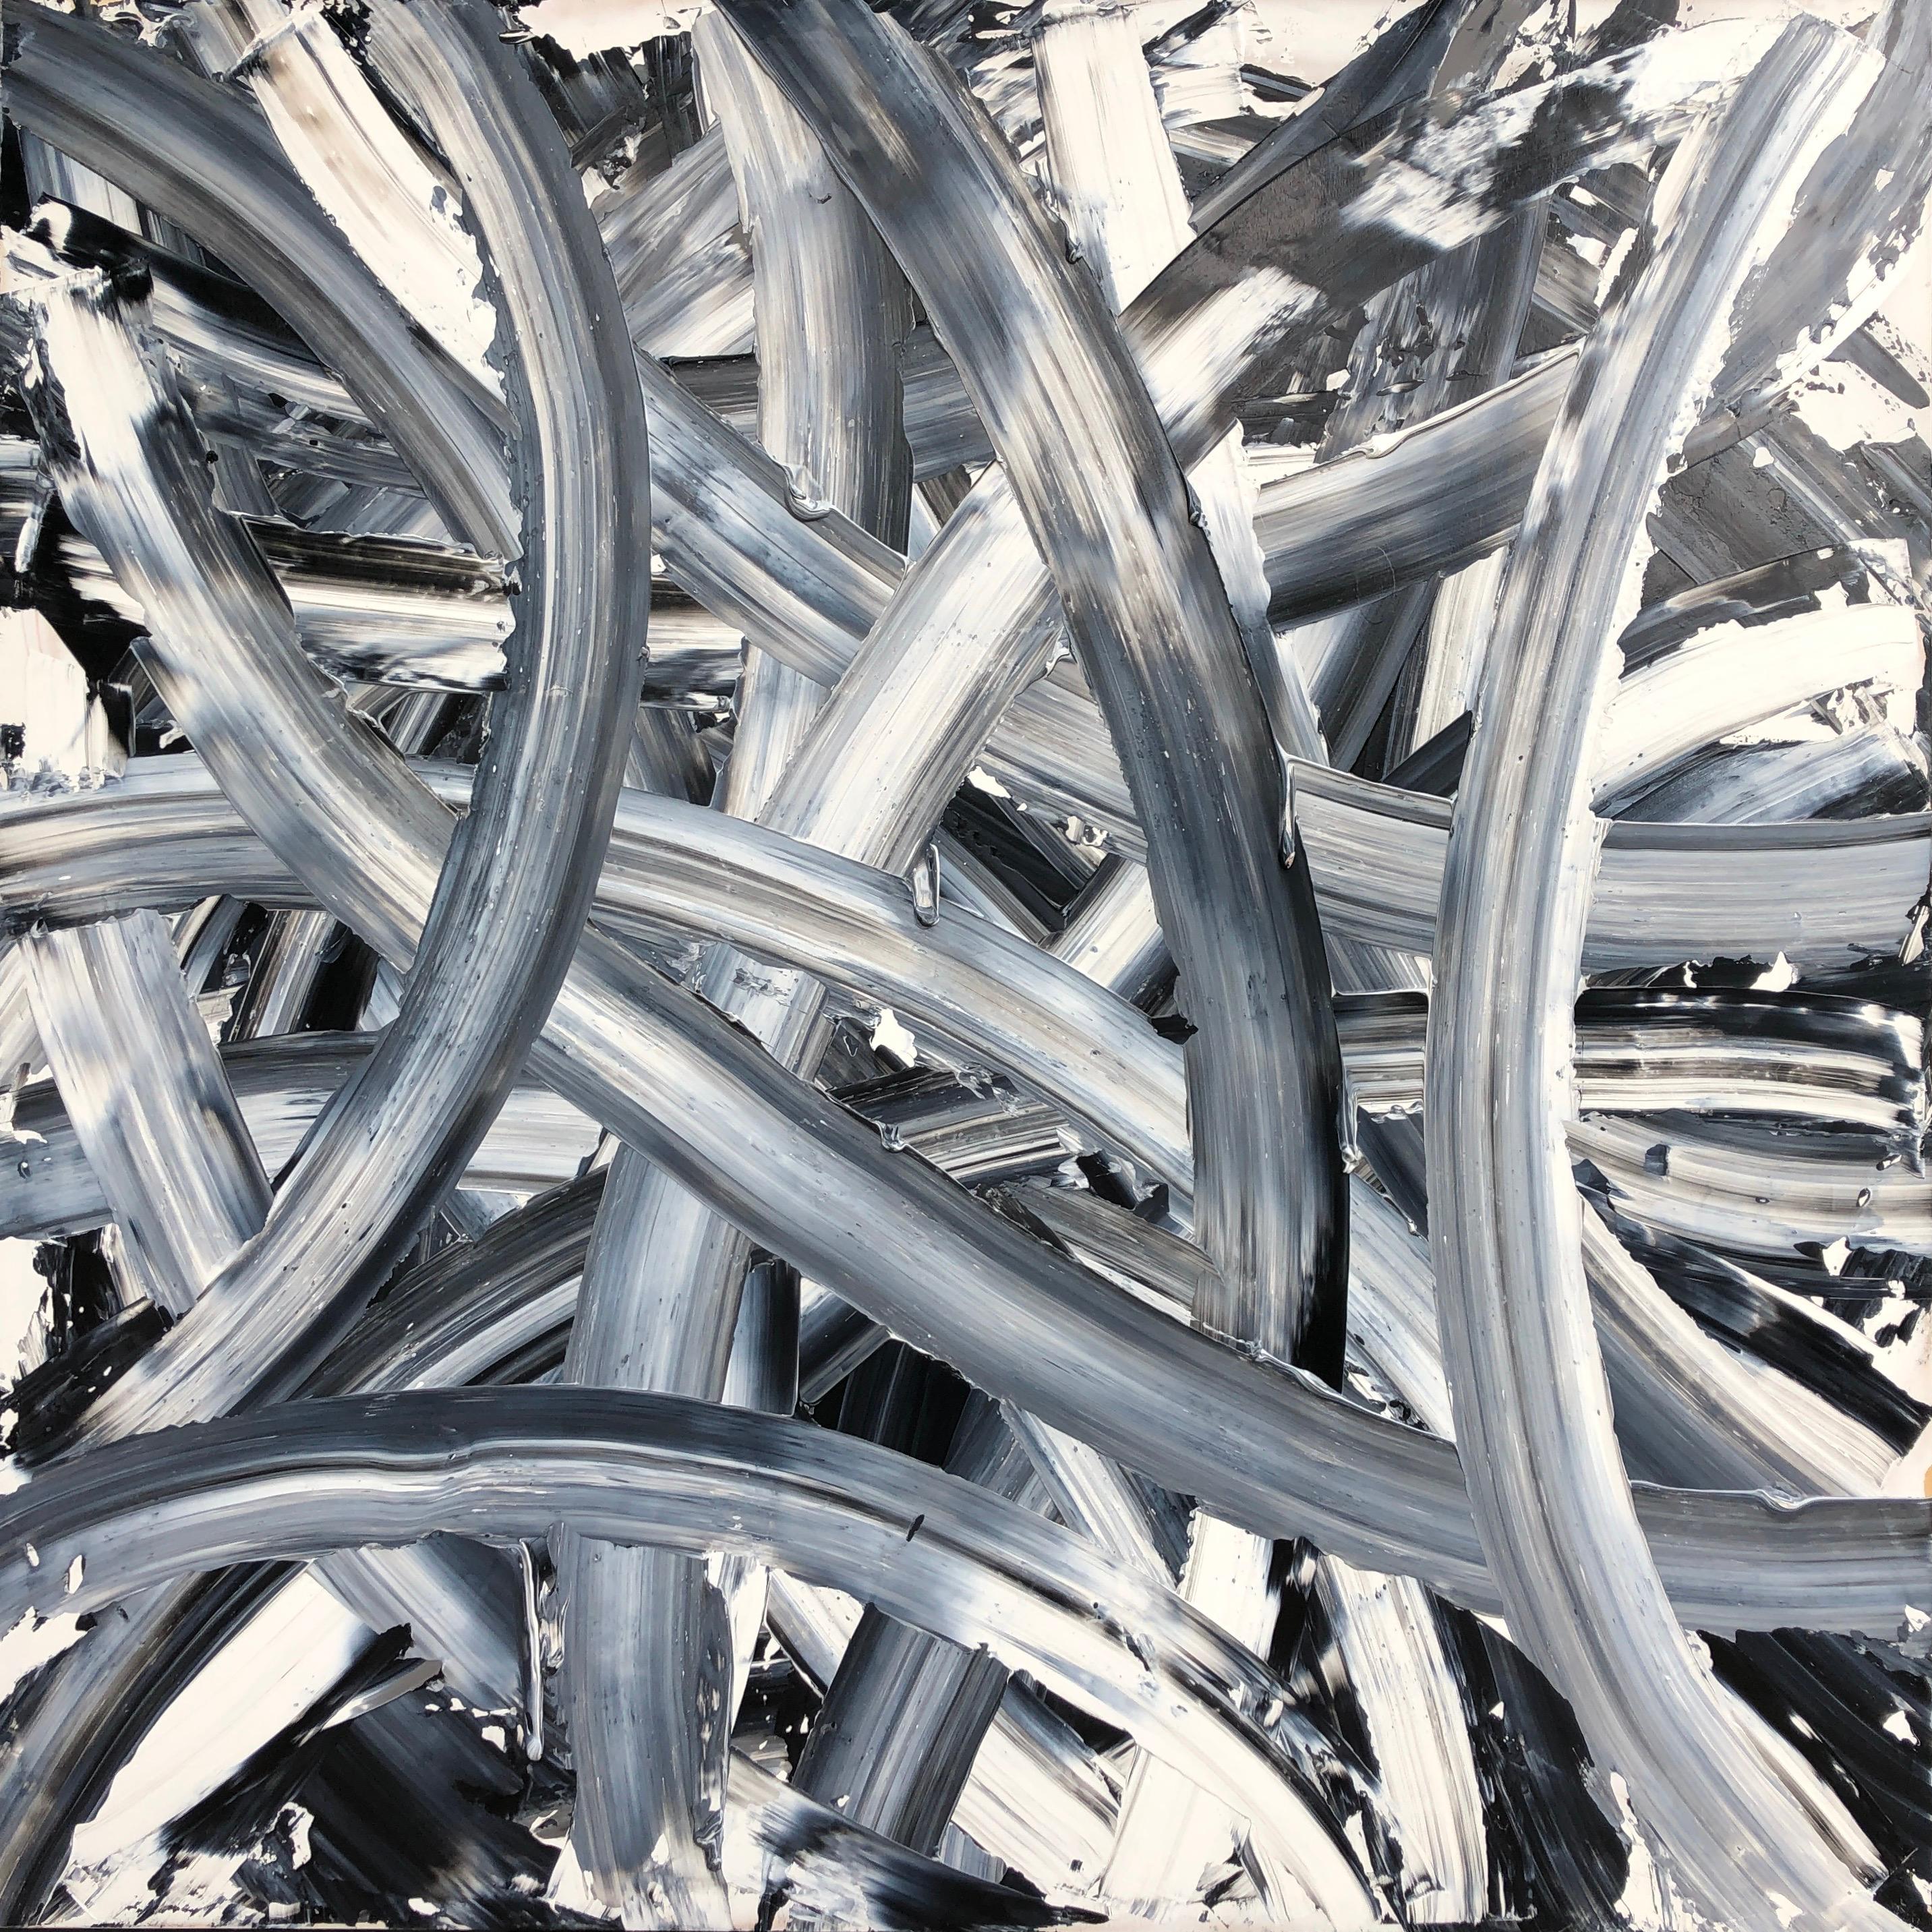 Endless Night wurde von Troy Smith in Acryl auf eine Birkenholzplatte gemalt. Die langen, bogenförmigen Palettenstriche reichen von einem Rand des Bildes zum anderen. Es werden nur zwei Farben gemischt, Schwarz und Weiß. Die langgezogene Palette